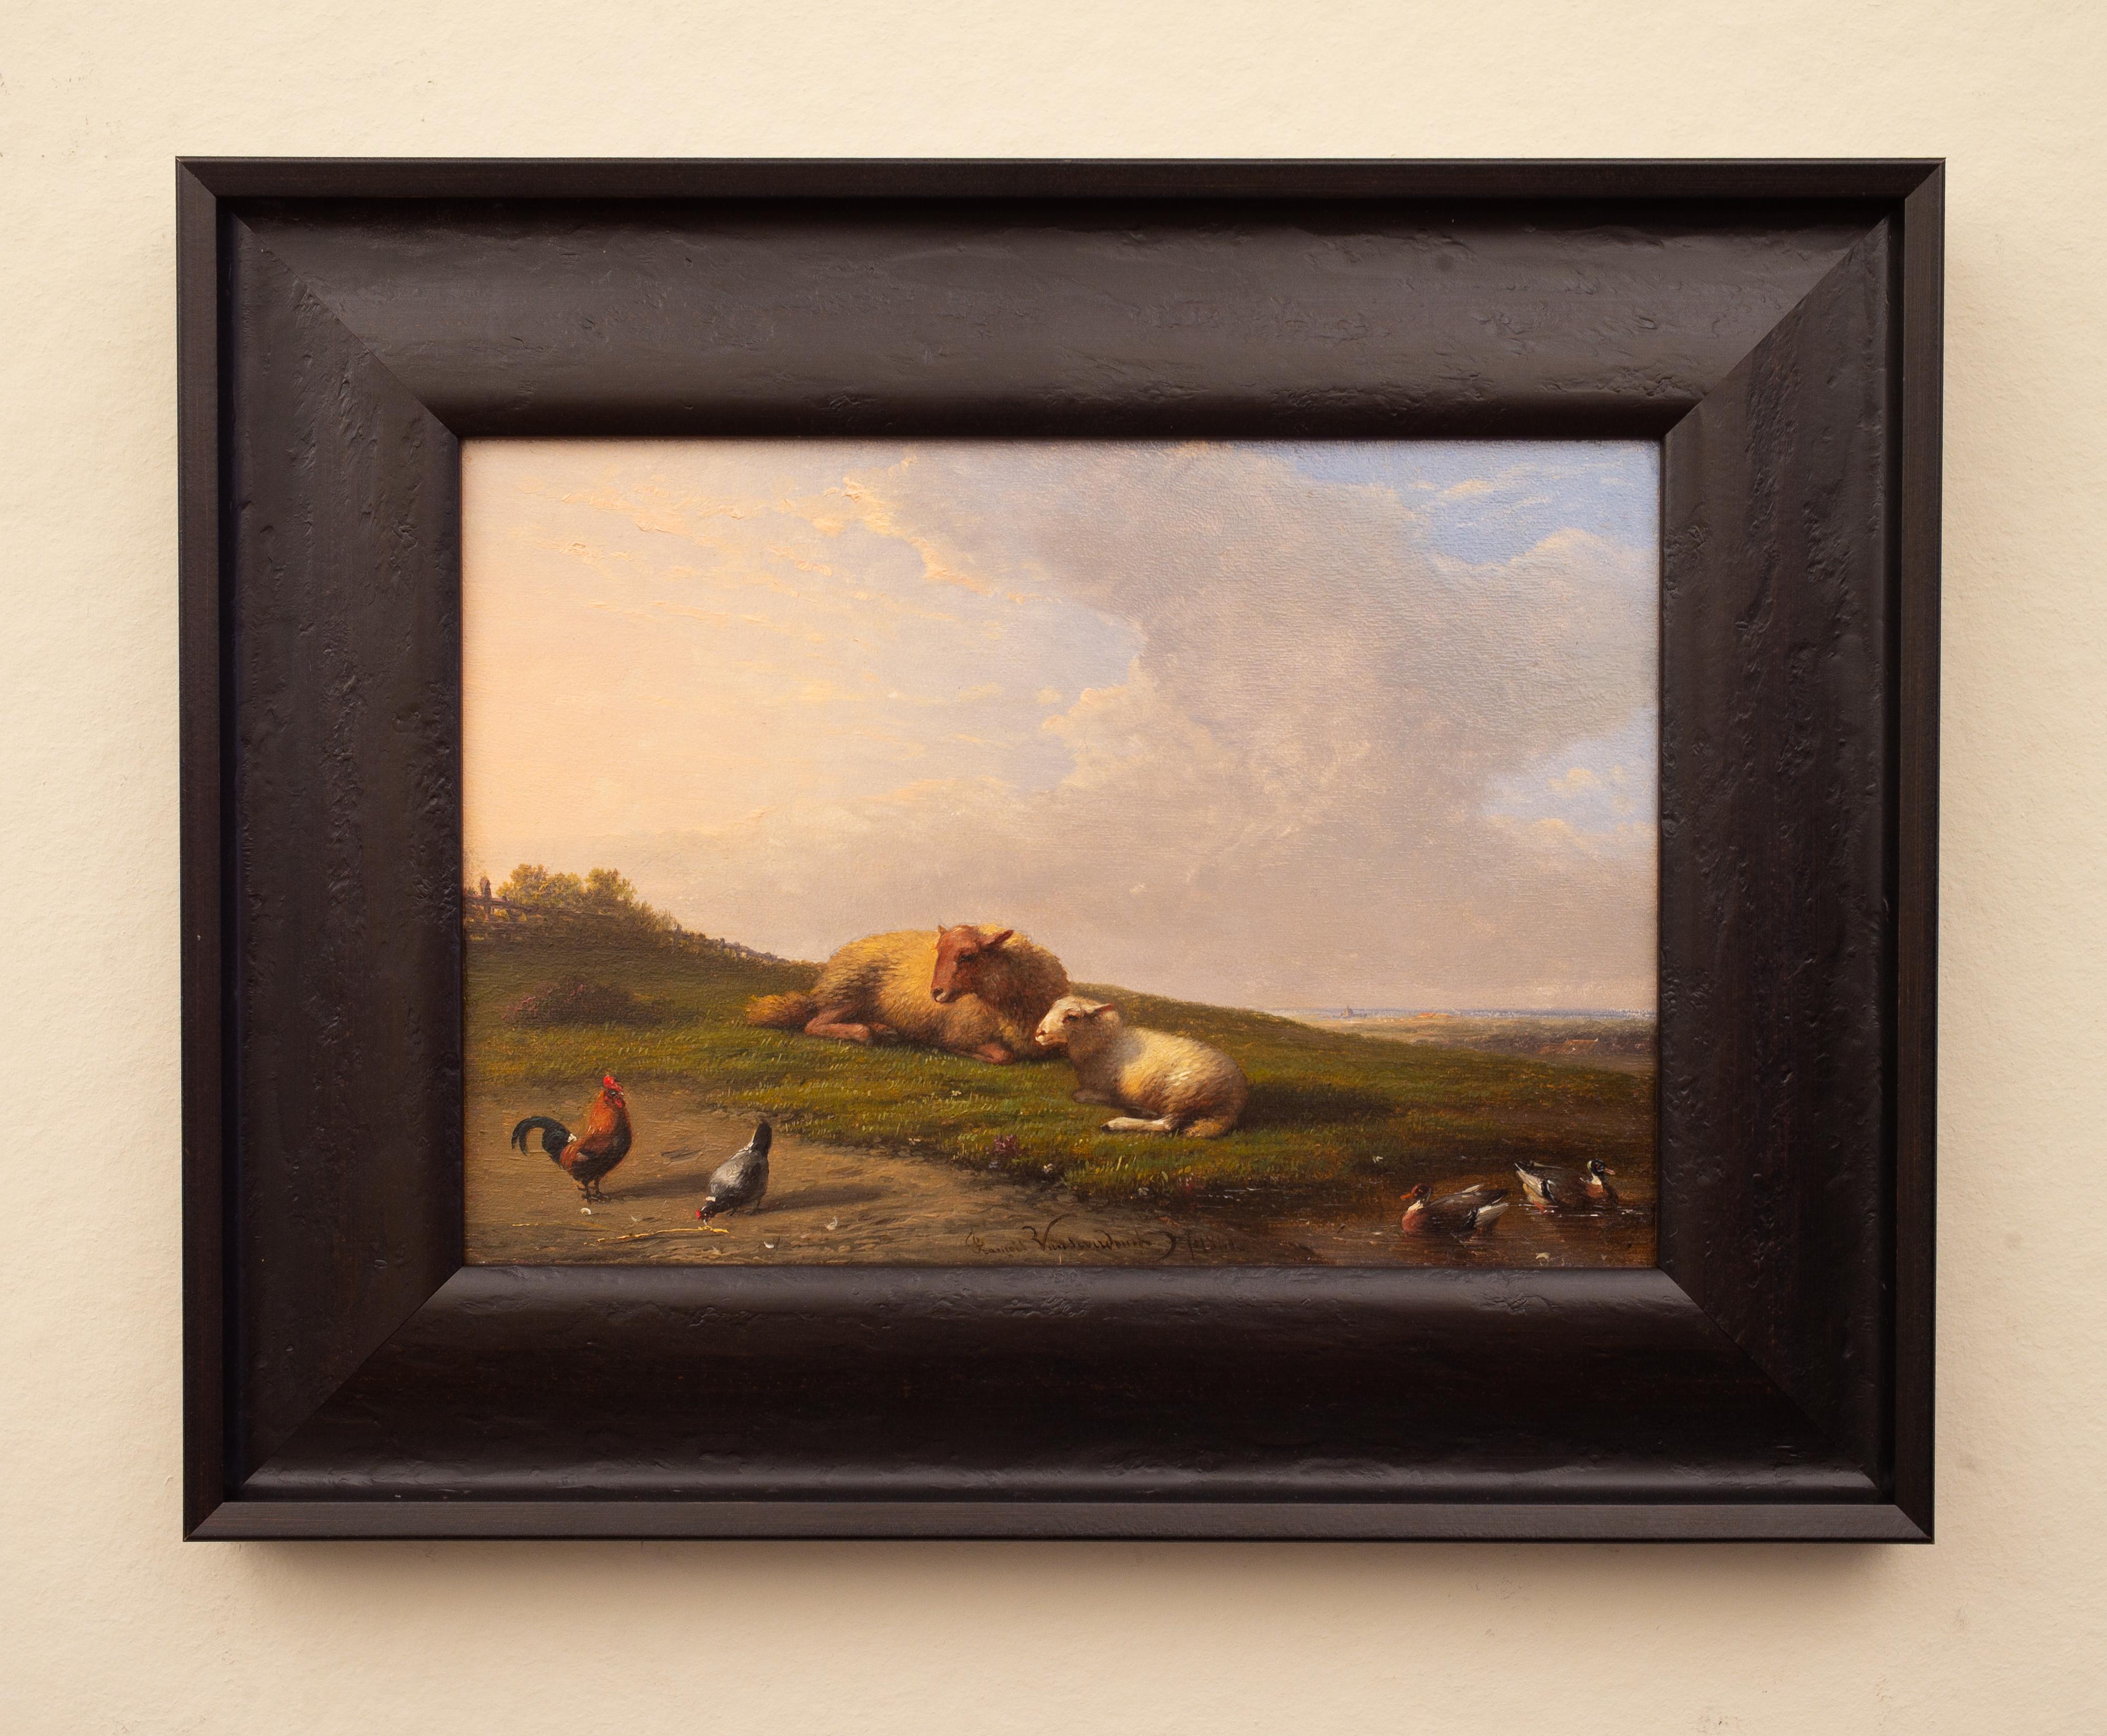 Francois (Frans) Van Severdonck (1809-1889) Belgier

Schaf rastend auf einer Wiese 

unterzeichnet Franc...? Van Severdonck und datiert 1861
Öl auf Platte
Tafelgröße 16 x 23 cm 
Rahmen 25,5 x 32 cm
Restauriert von einem professionellen Restaurator